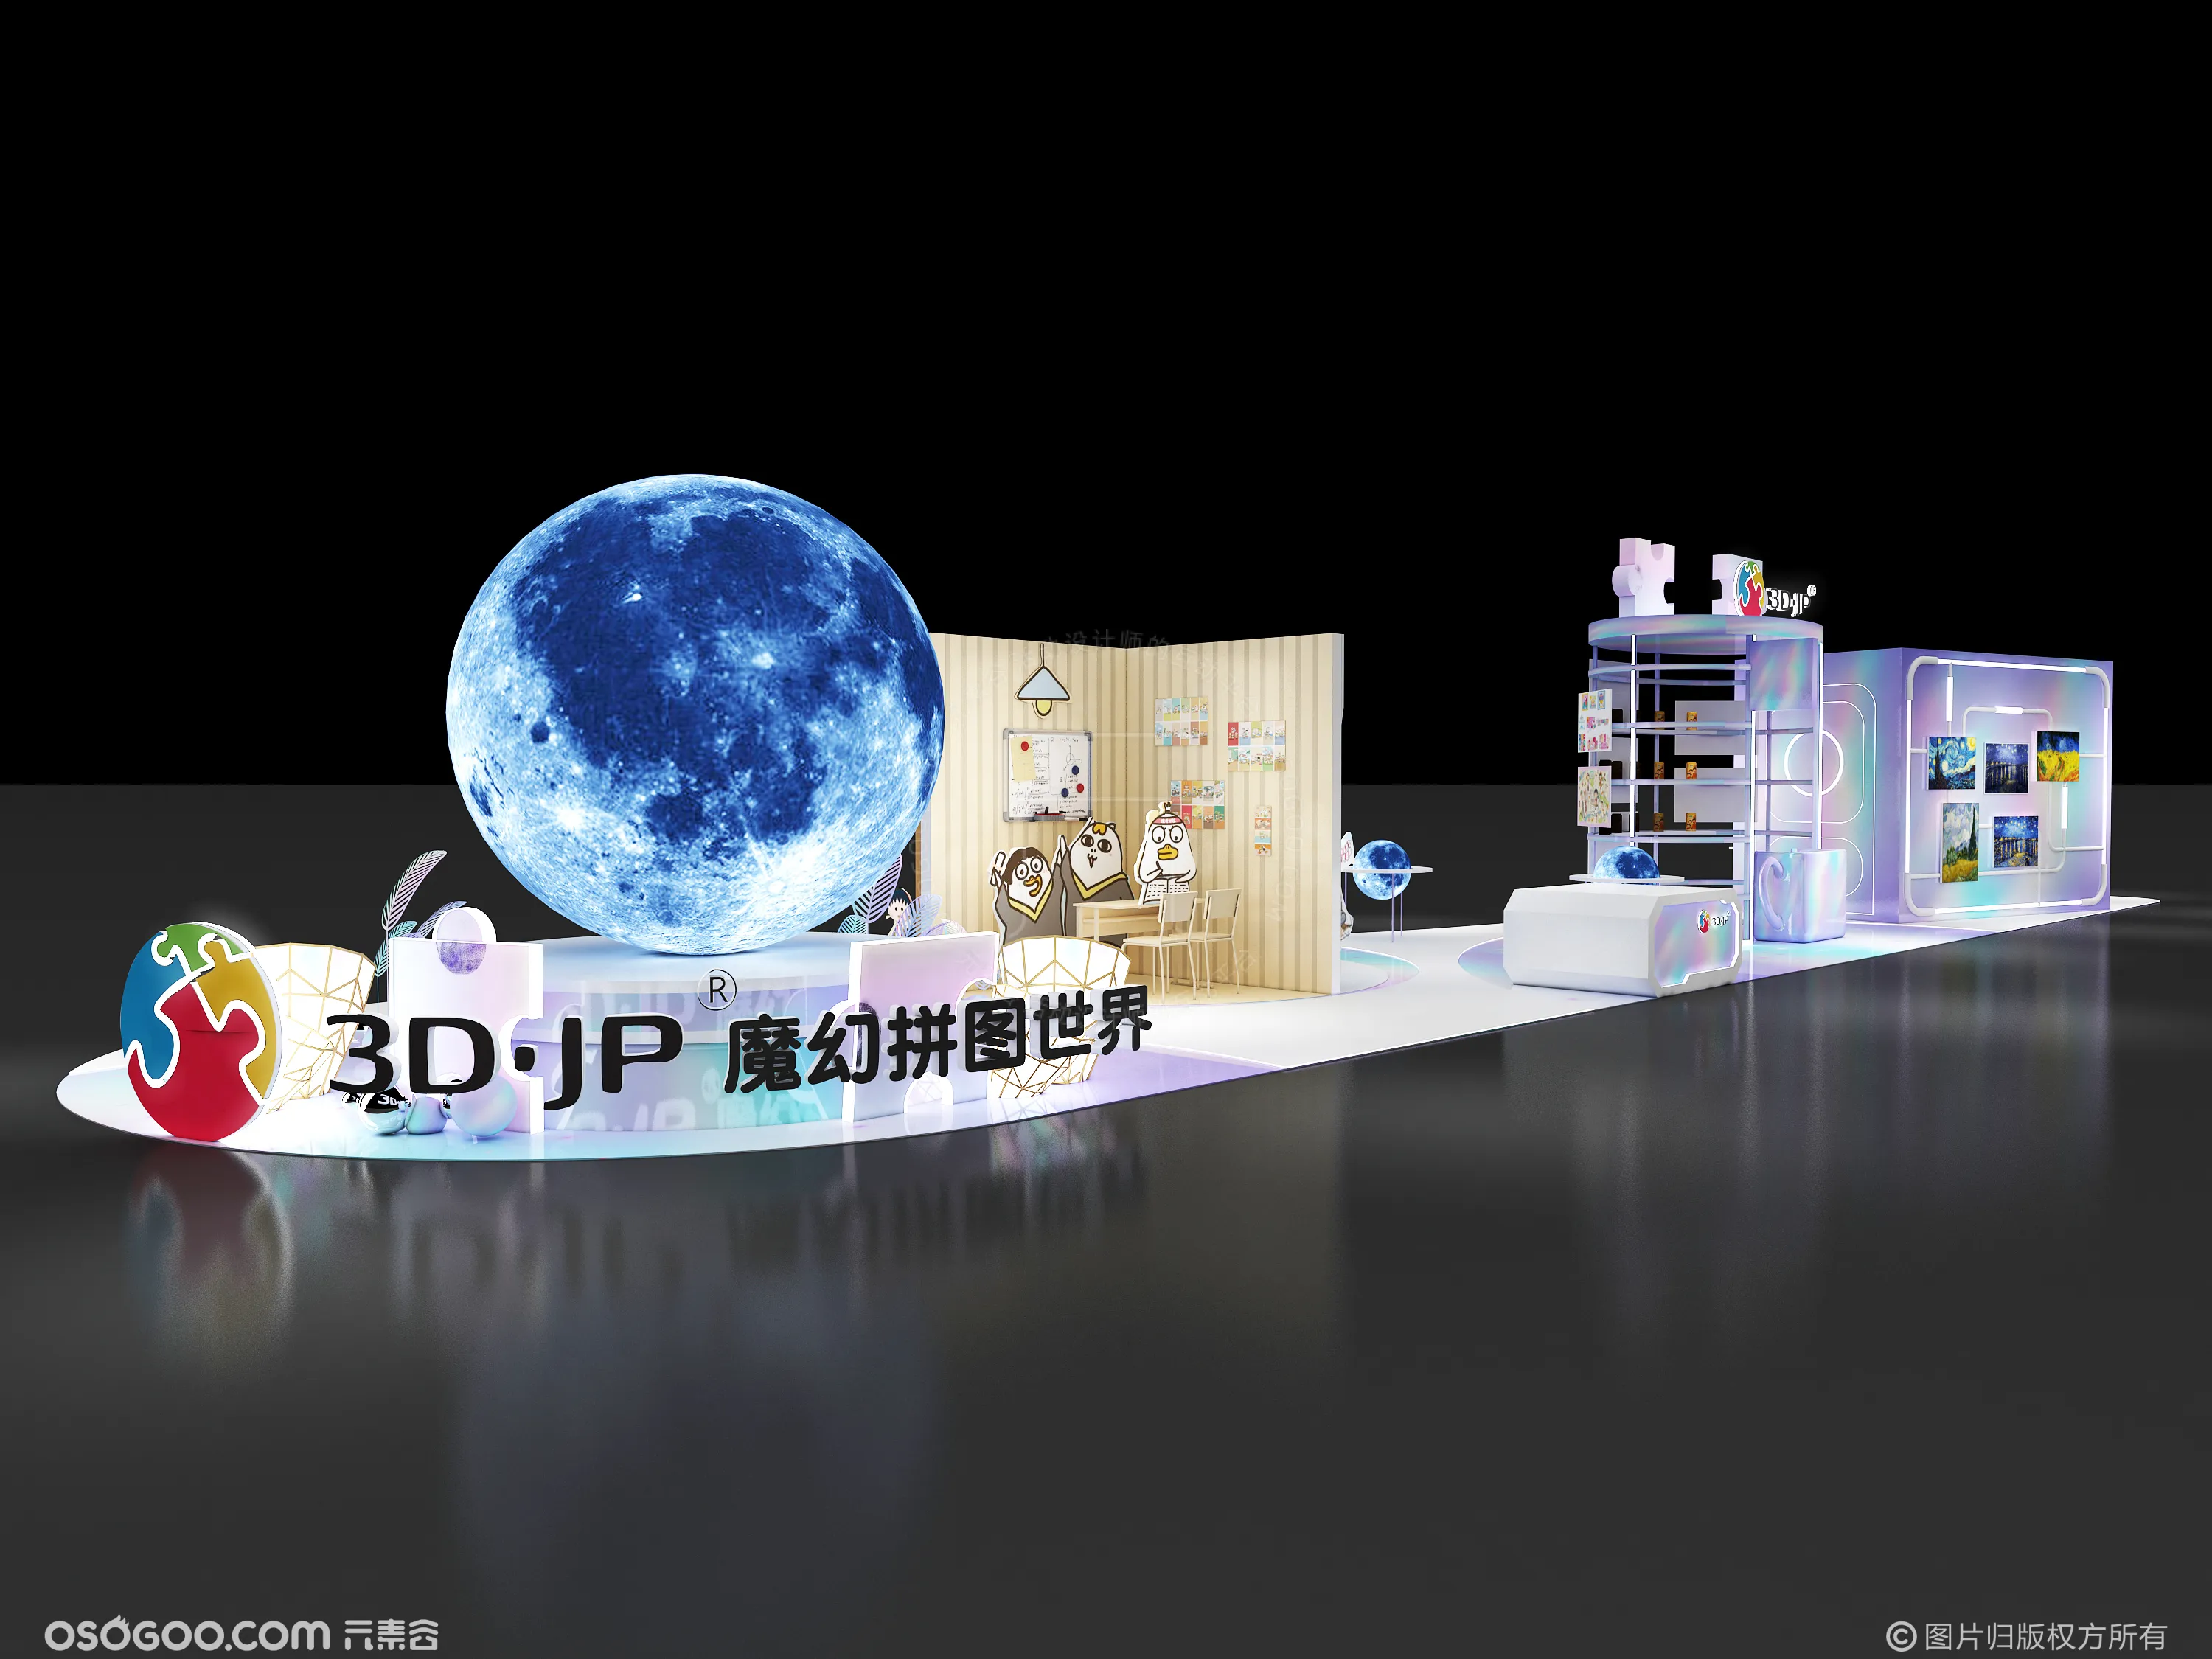 3D效果图设计 3djp魔幻拼图世界活动